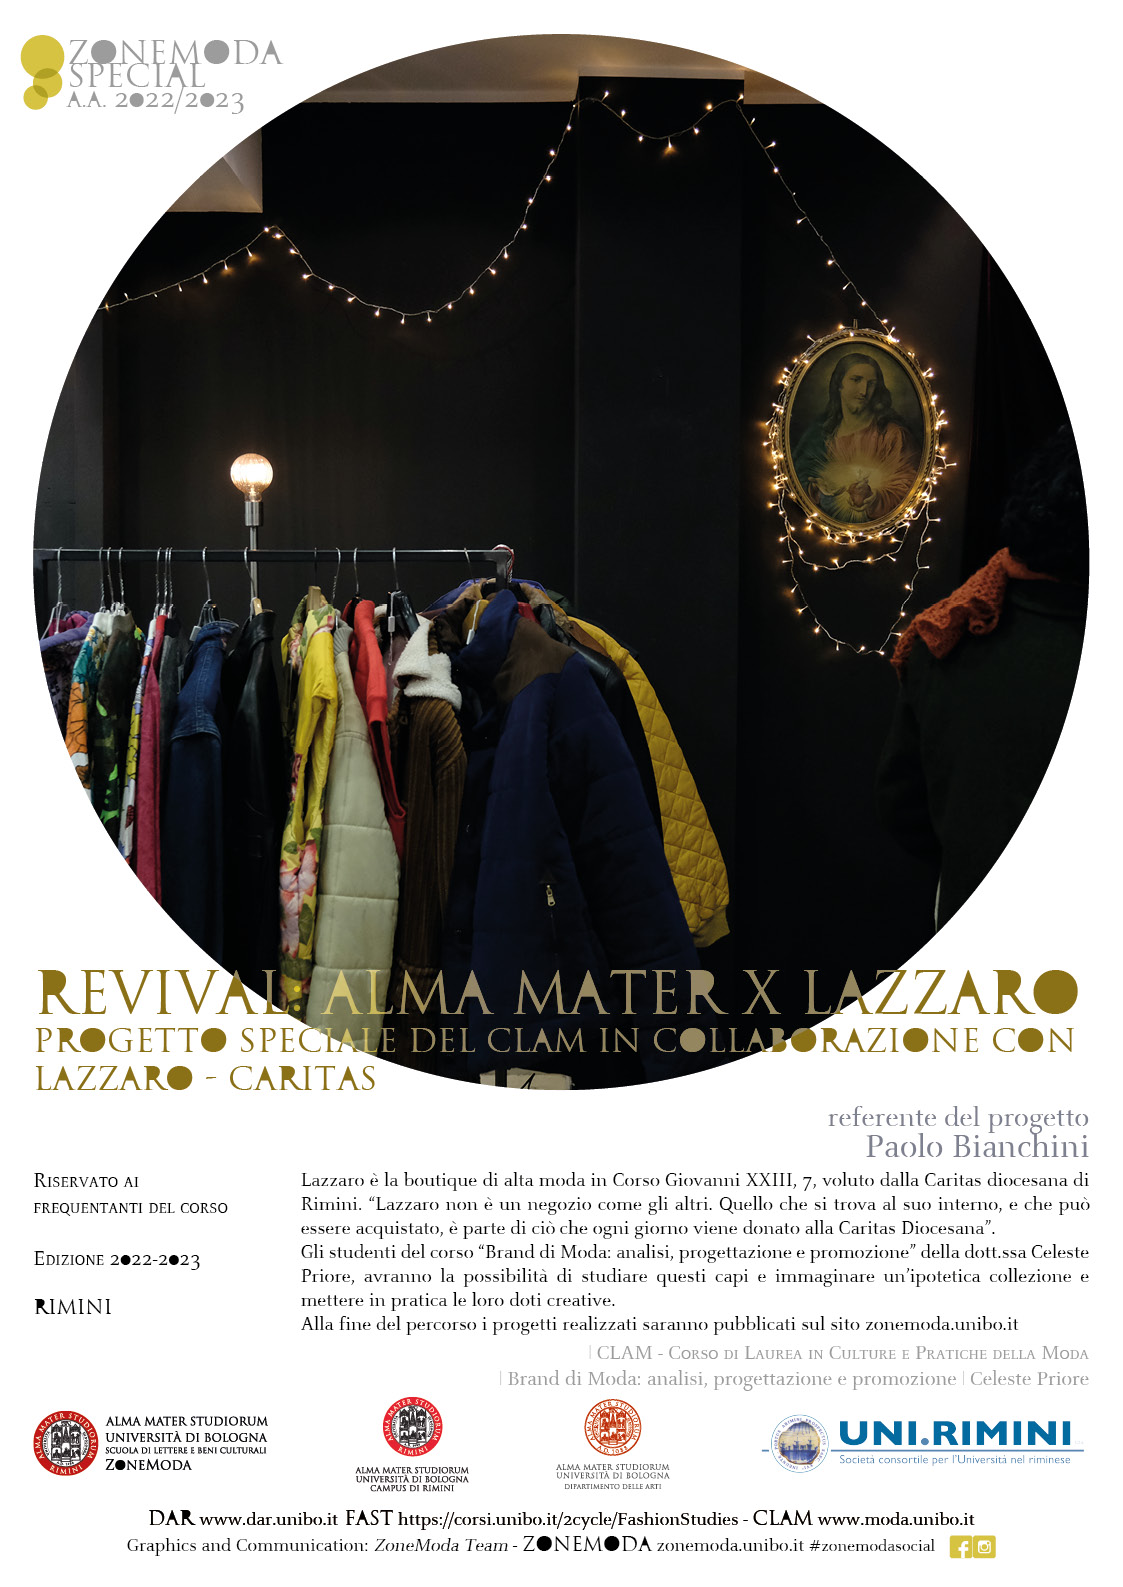 Brand di moda - Progetto speciale del CLAM in collaborazione con Lazzaro - Caritas